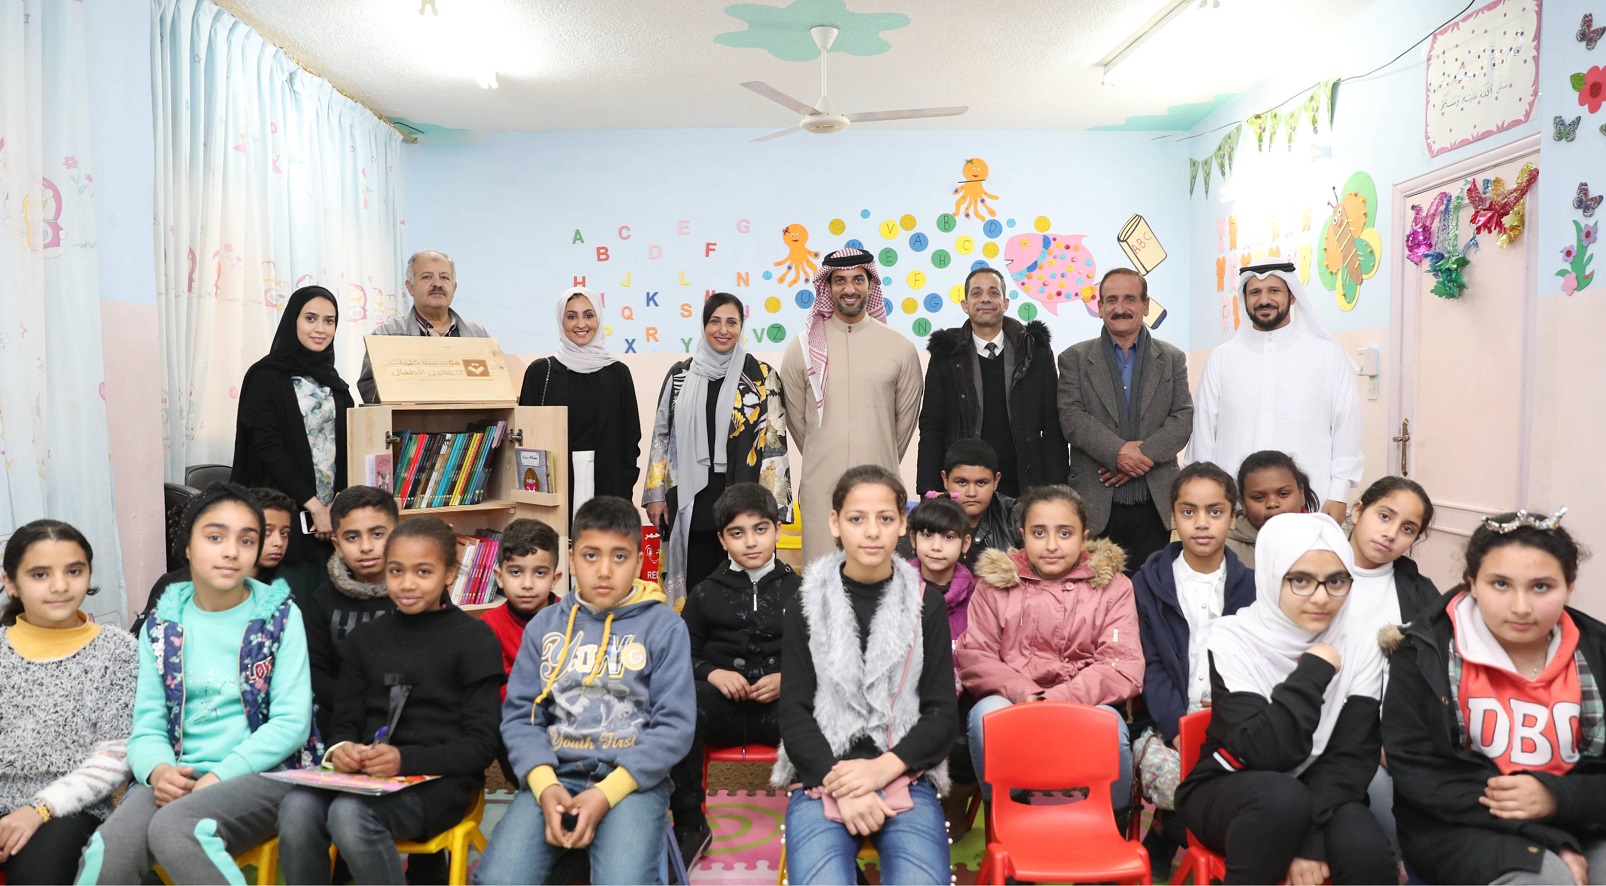 إهداء 700 كتاب إلى 7 مدارس فى الأردن لدعم اللاجئين والنازحين (2)